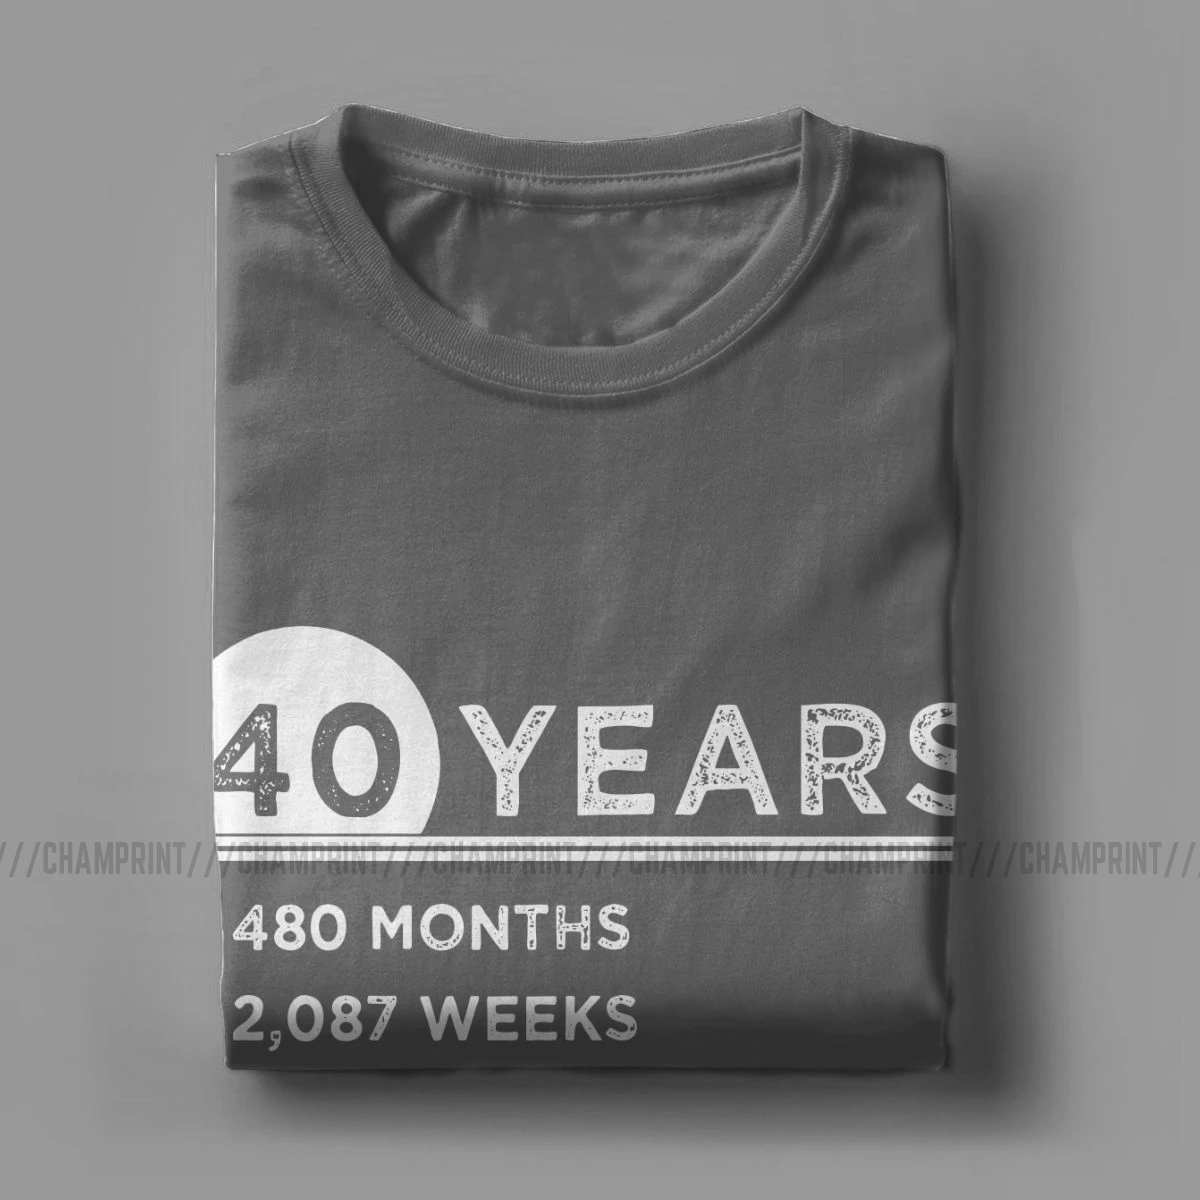 40 Rokov, Je Úžasné 1980 T Košele pre Mužov Bavlna Pohode T-Shirt Crewneck 40. Narodeniny, Darčeky, Tričká Krátky Rukáv Topy